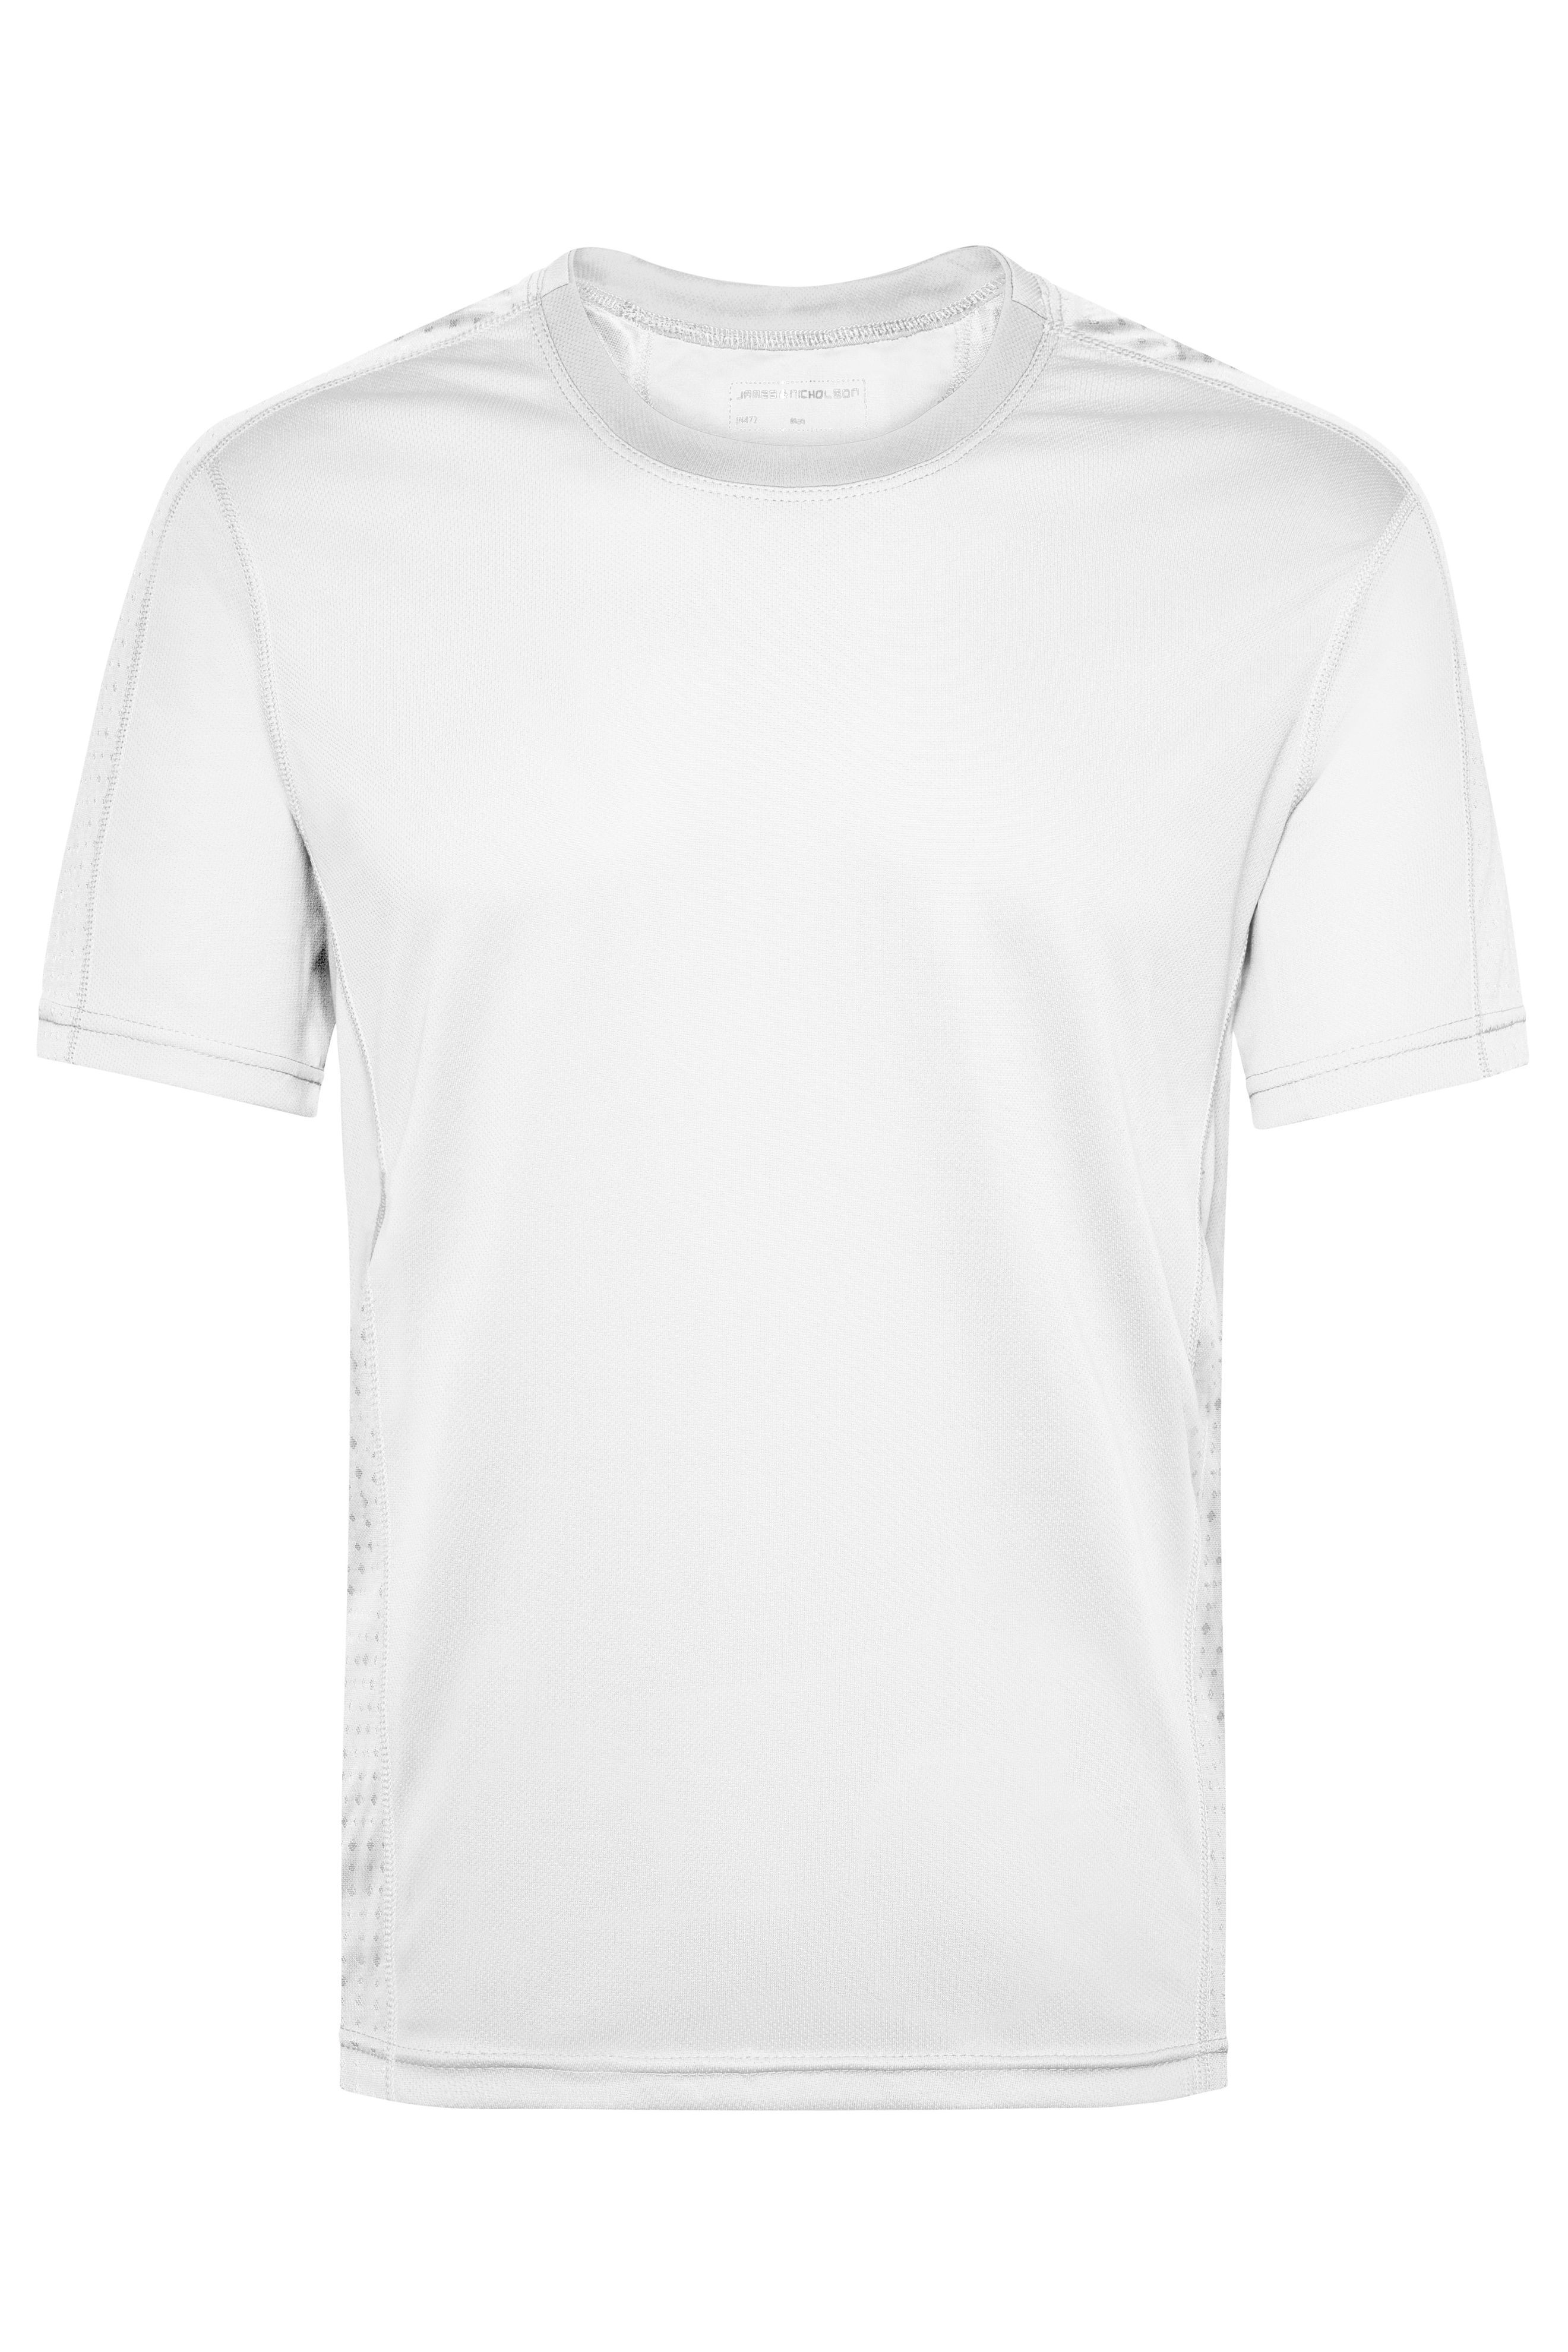 Men Men's Running T-Shirt White/white-Daiber